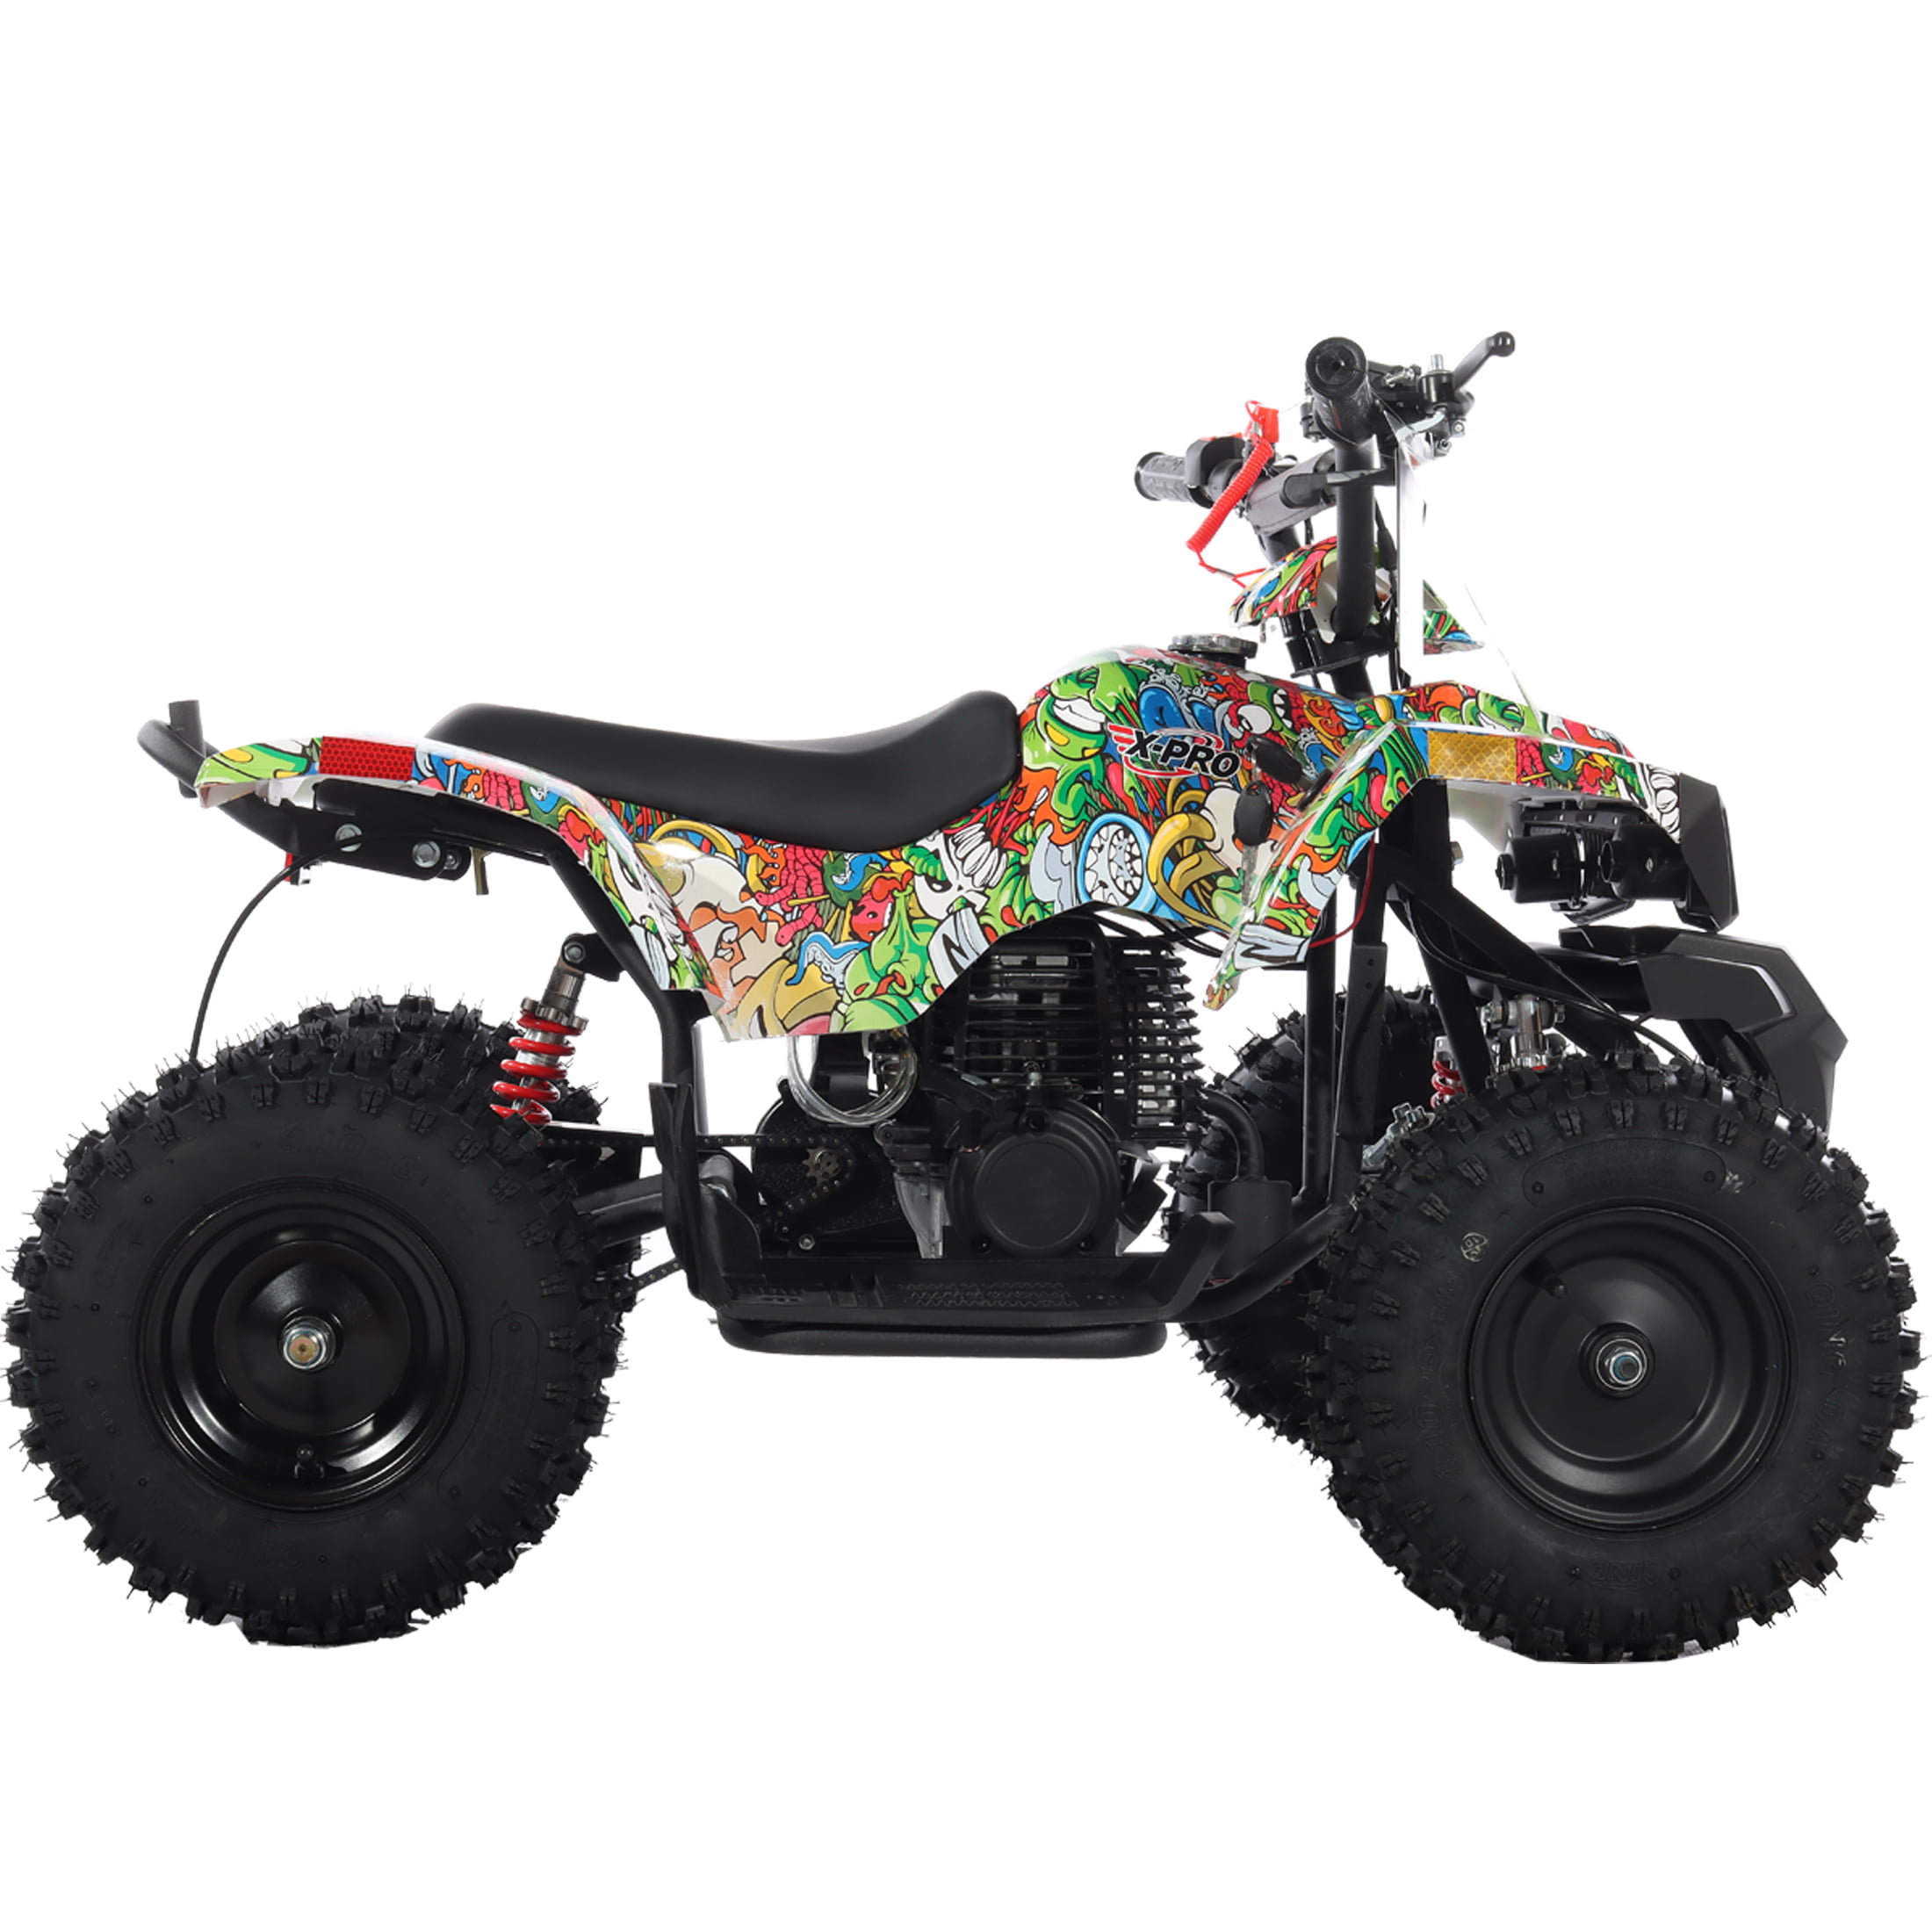 XLJOY 12 unids motocicleta gasolina gasolina filtro de combustible en línea  para Dirt Pit Trail Bike 4 Wheeler Quad ATV Quad niños bebé mini moto moto